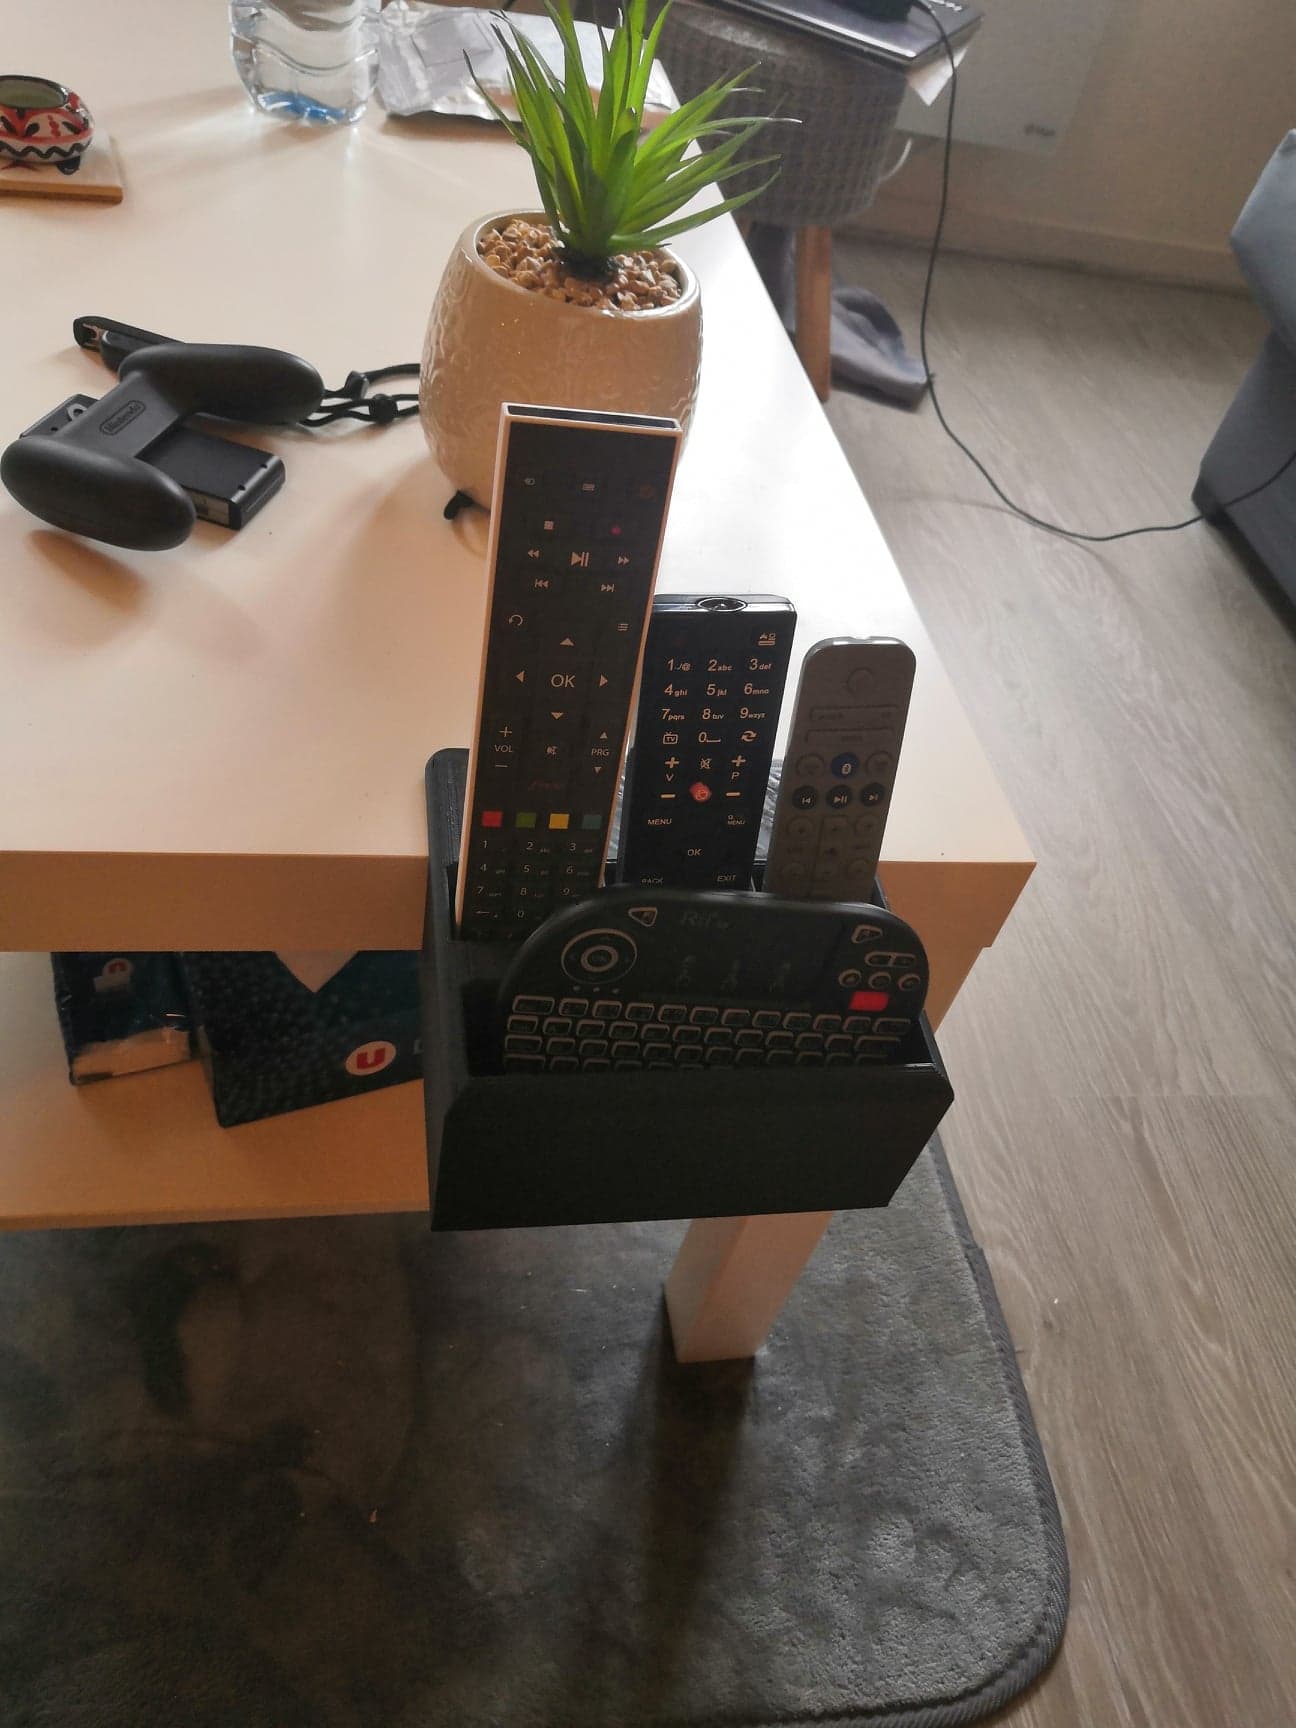 TV remote control holder / Rangement télécommande TV